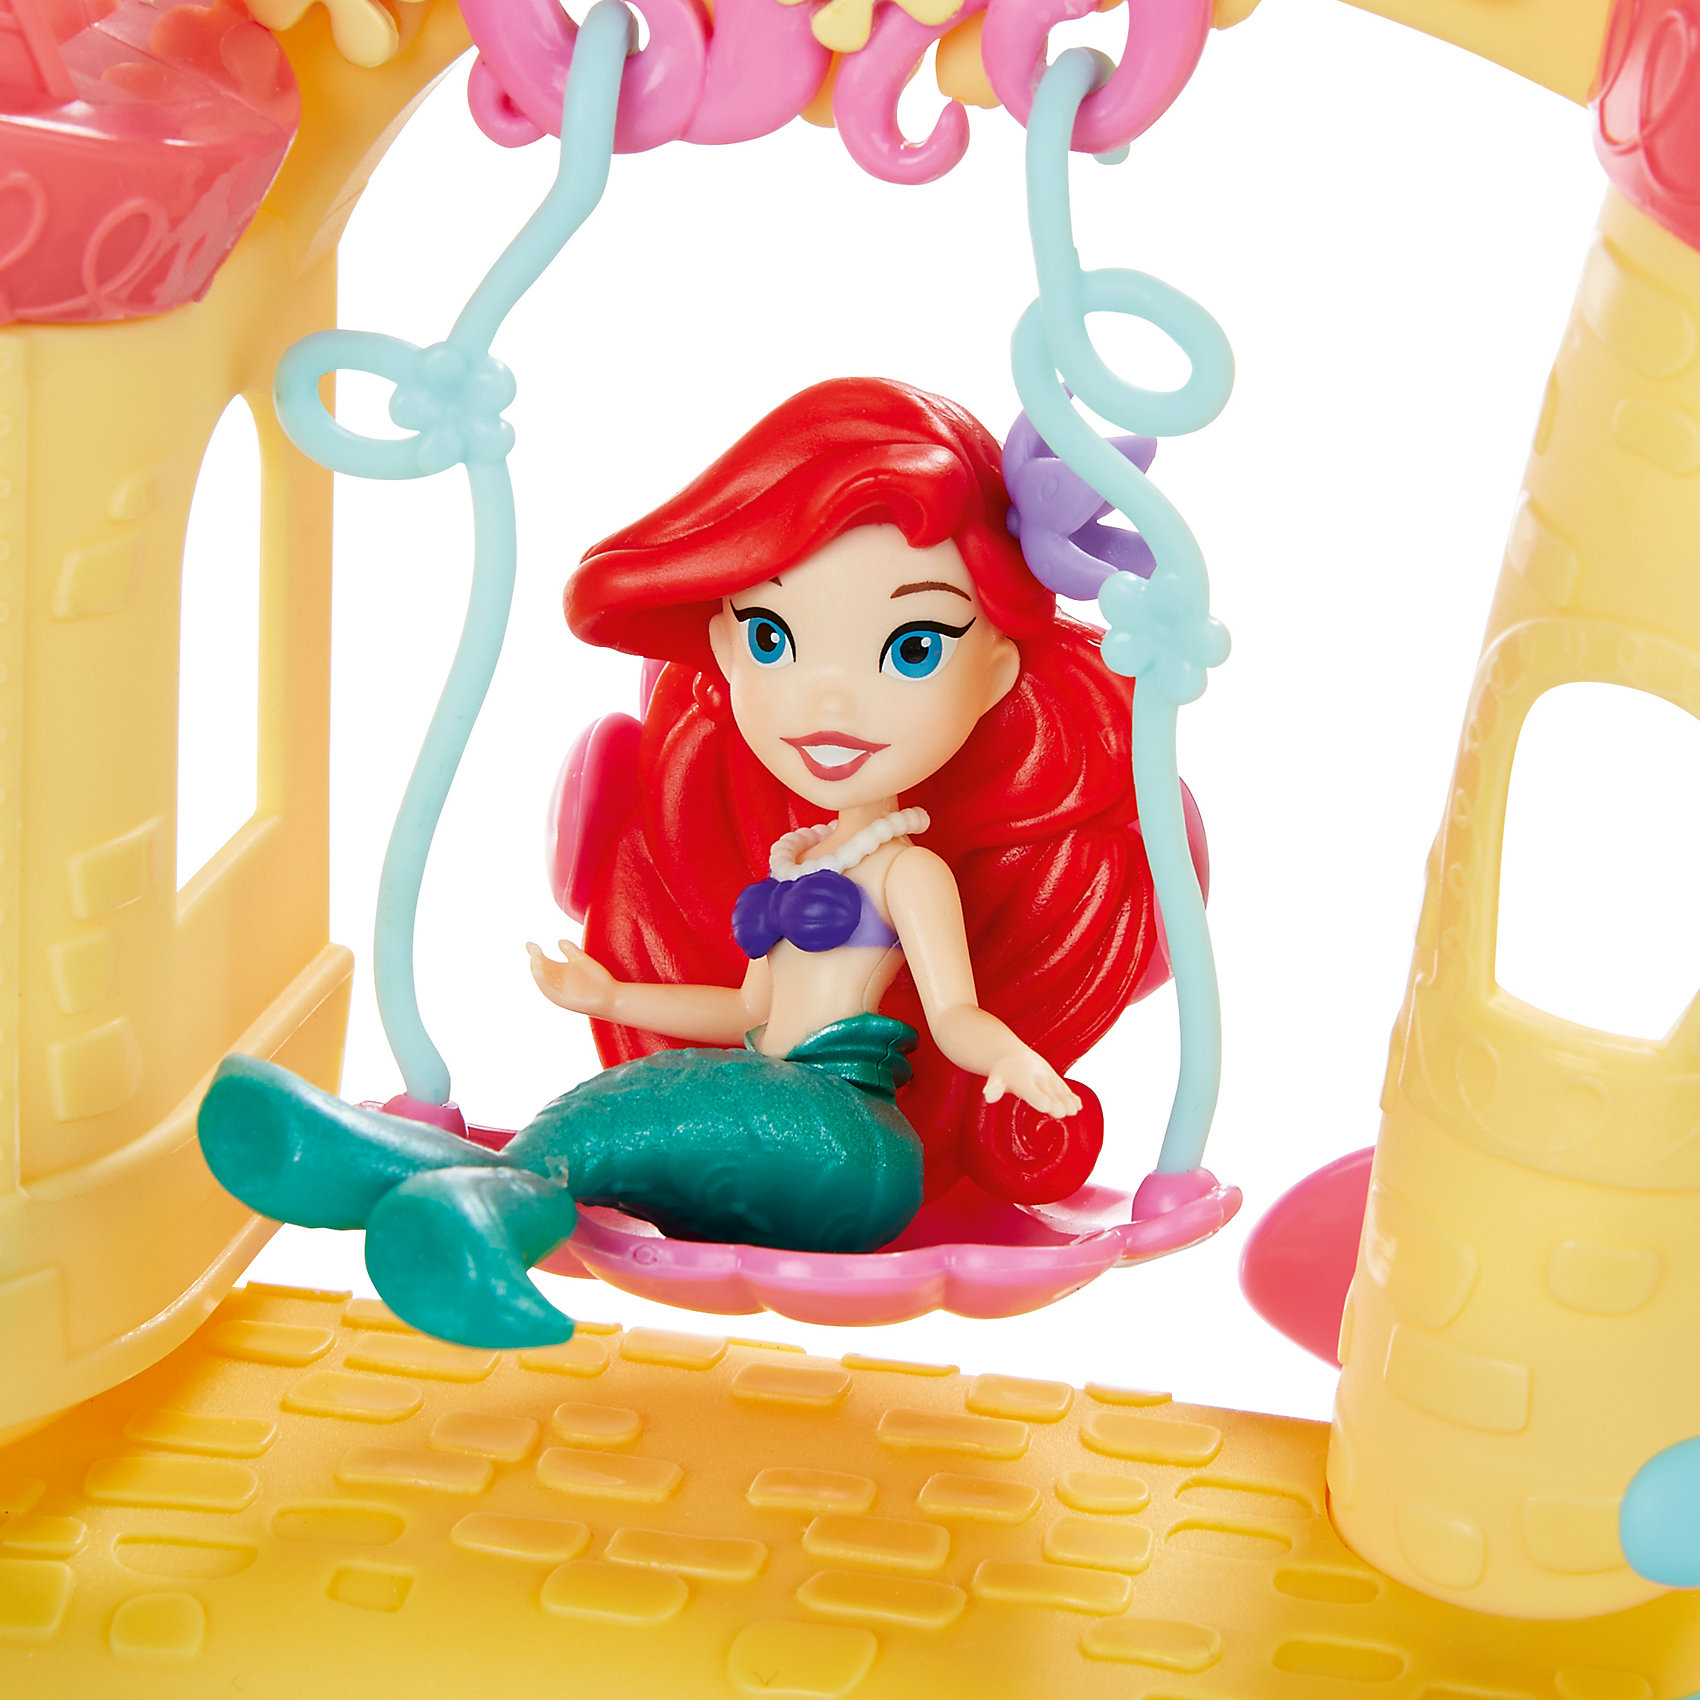 фото Замок ариэль для игры с водой, принцессы дисней Hasbro